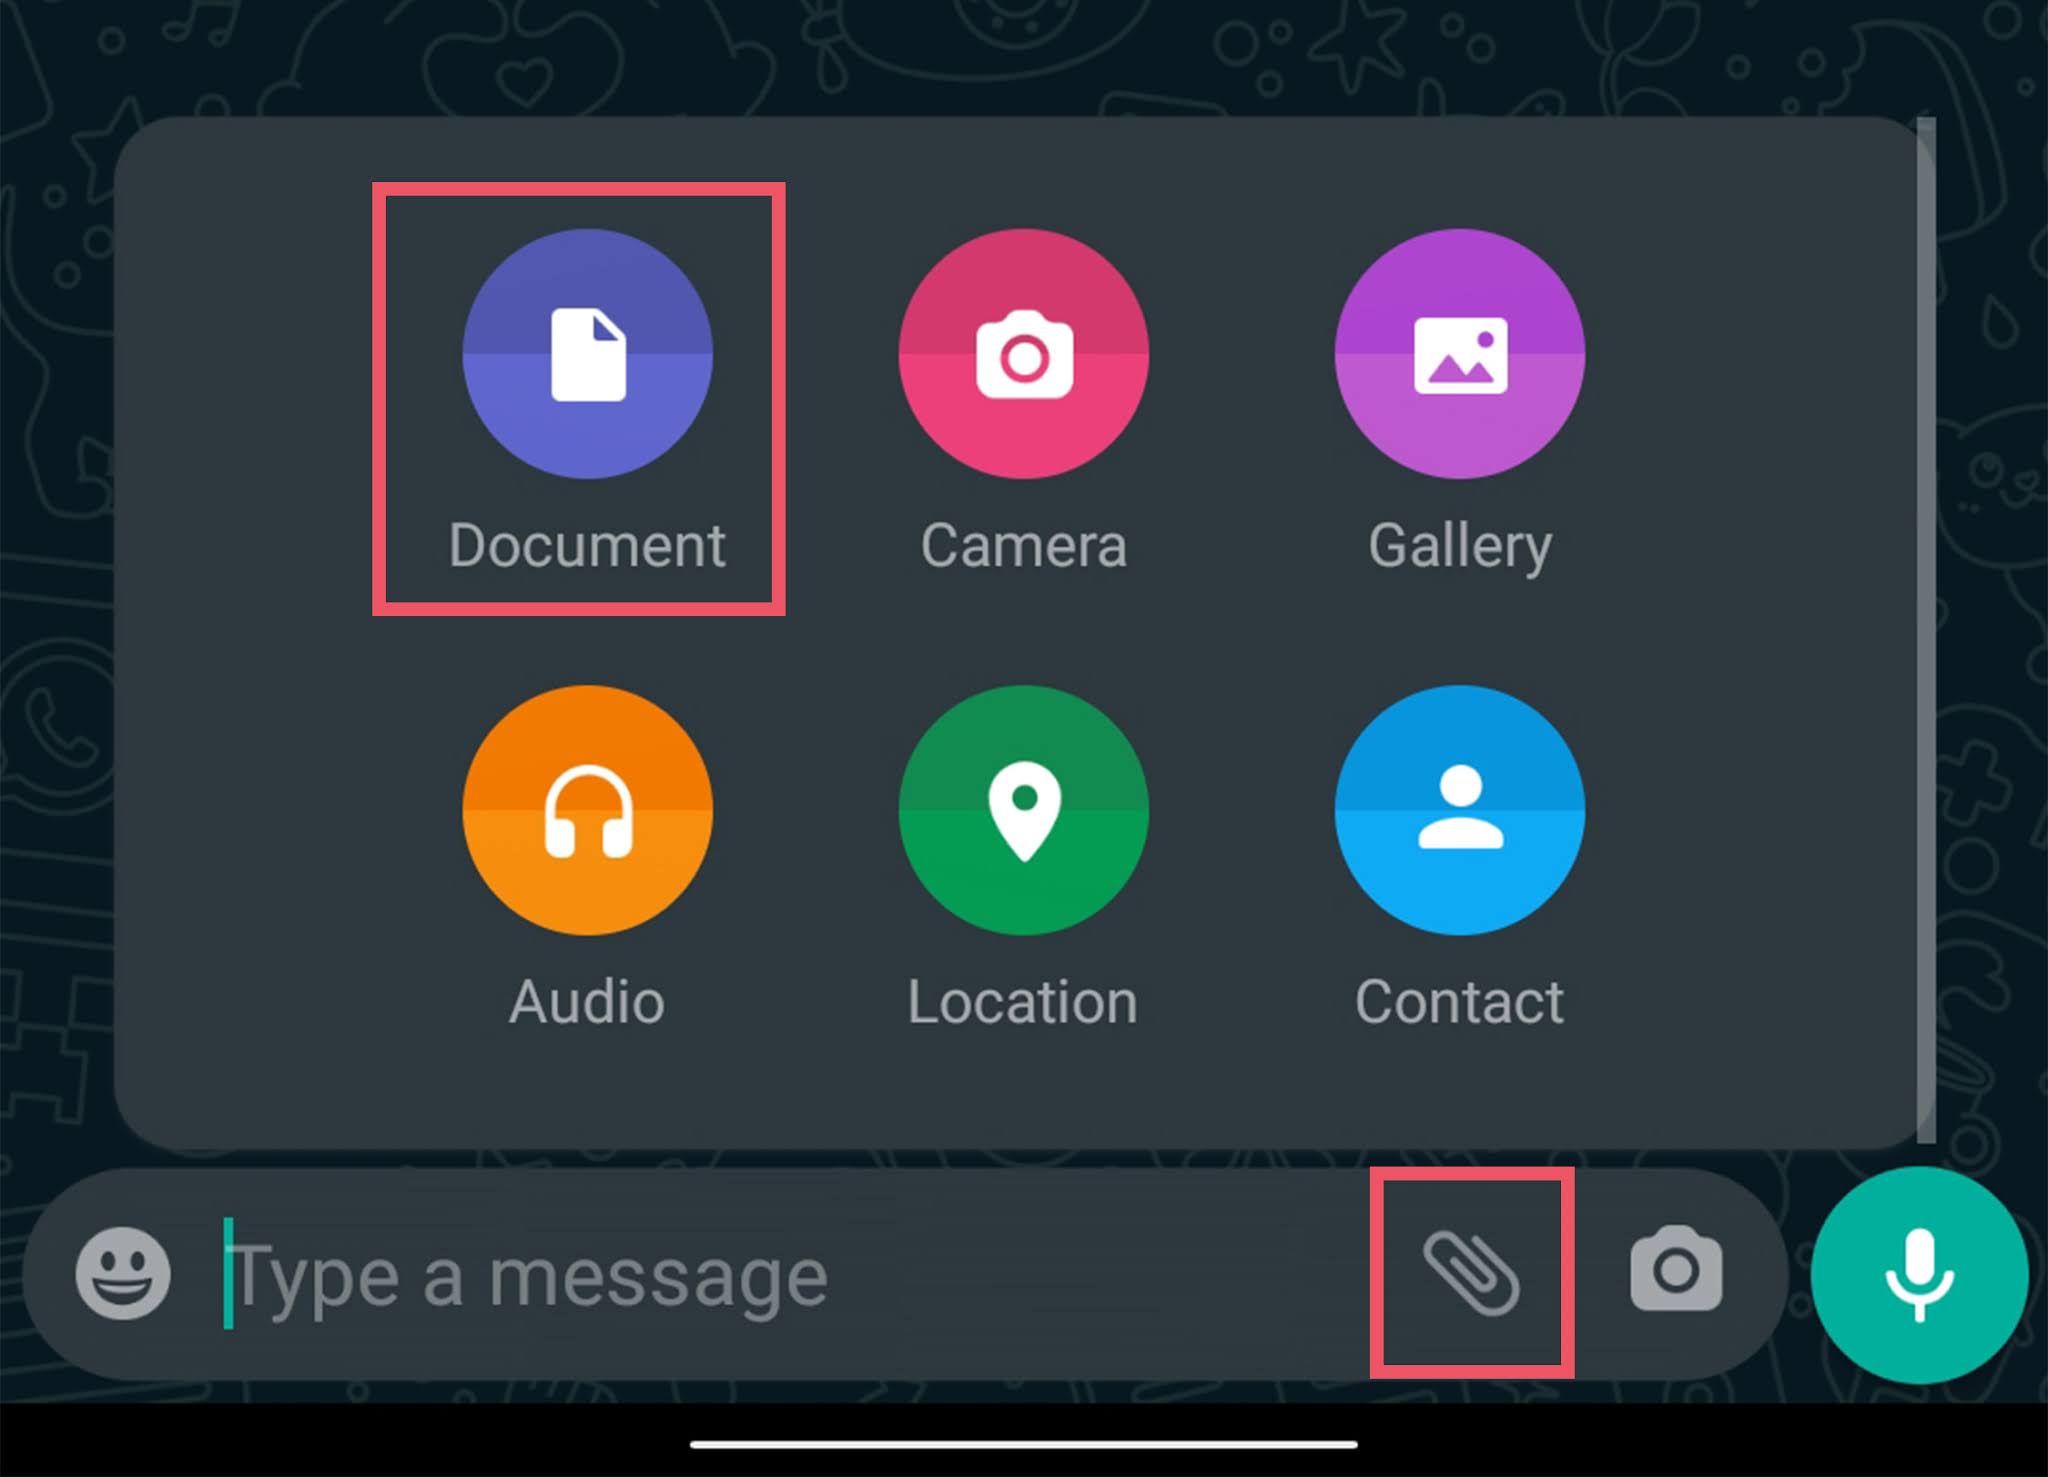 Kirim Sebagai Dokumen - Cara Mengirim Gambar dan Video di WhatsApp Tanpa Mengurangi Kualitas